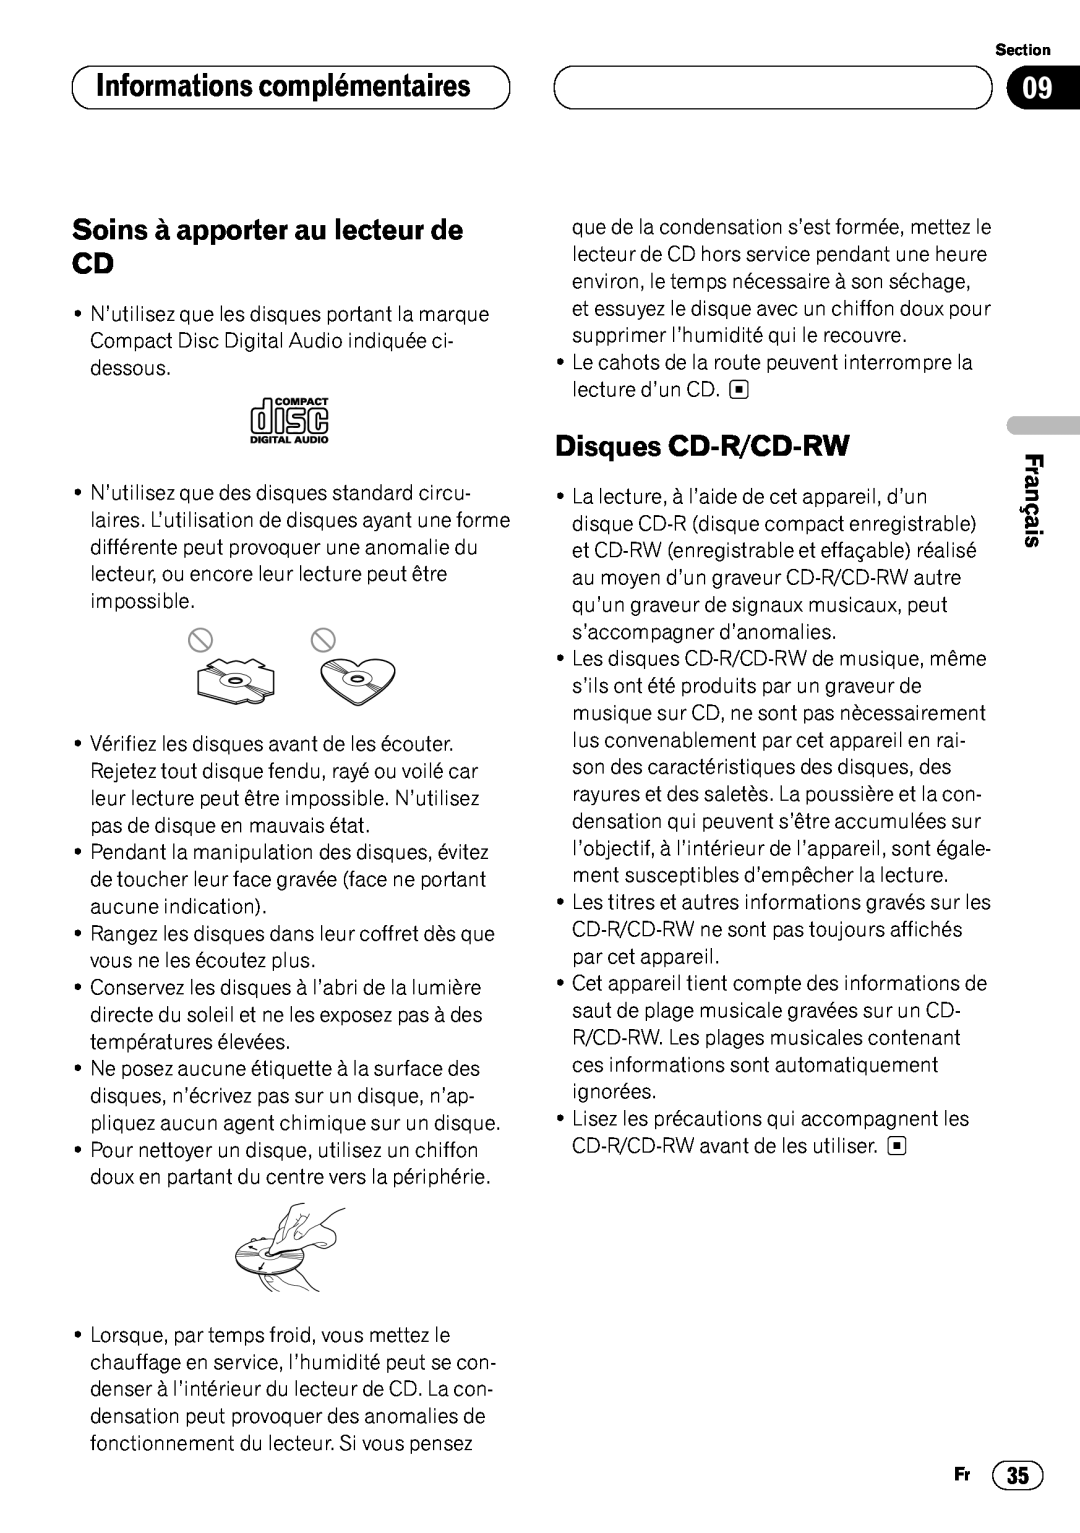 Pioneer DEH-P4400 operation manual Informations complémentaires09, Soins à apporter au lecteur de CD, Disques CD-R/CD-RW 